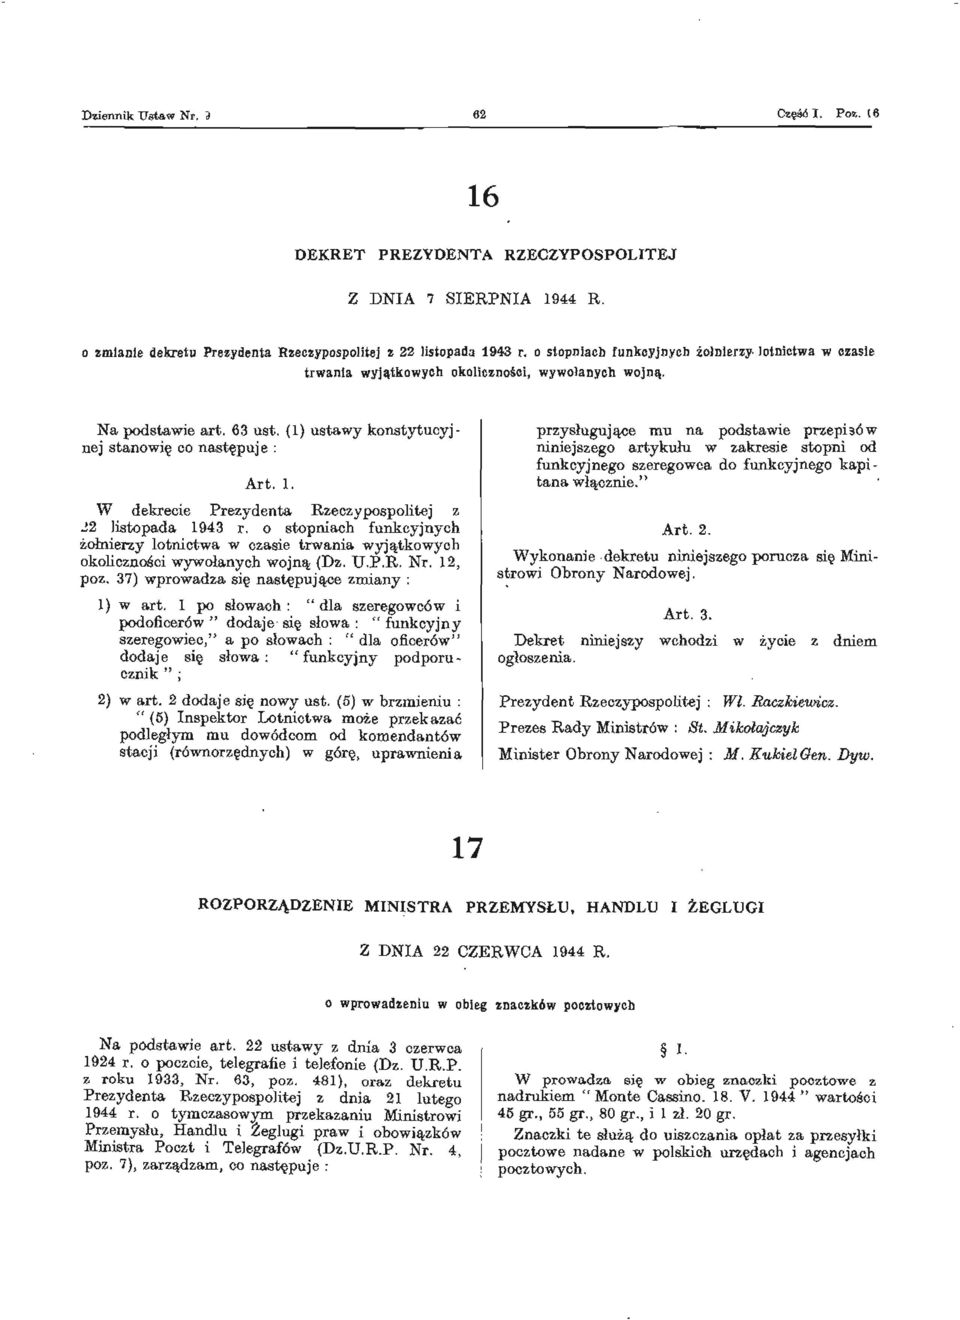 W dekrecie Prezydenta Rzeczypospolitej z 22 listopada 1943 r. o stopniach funkcyjnych żołnierzy lotnictwa w czasie trwania wyjątkowych okoliczności wywołanych wojną (Dz. U.P.R. Nr. 12, poz.